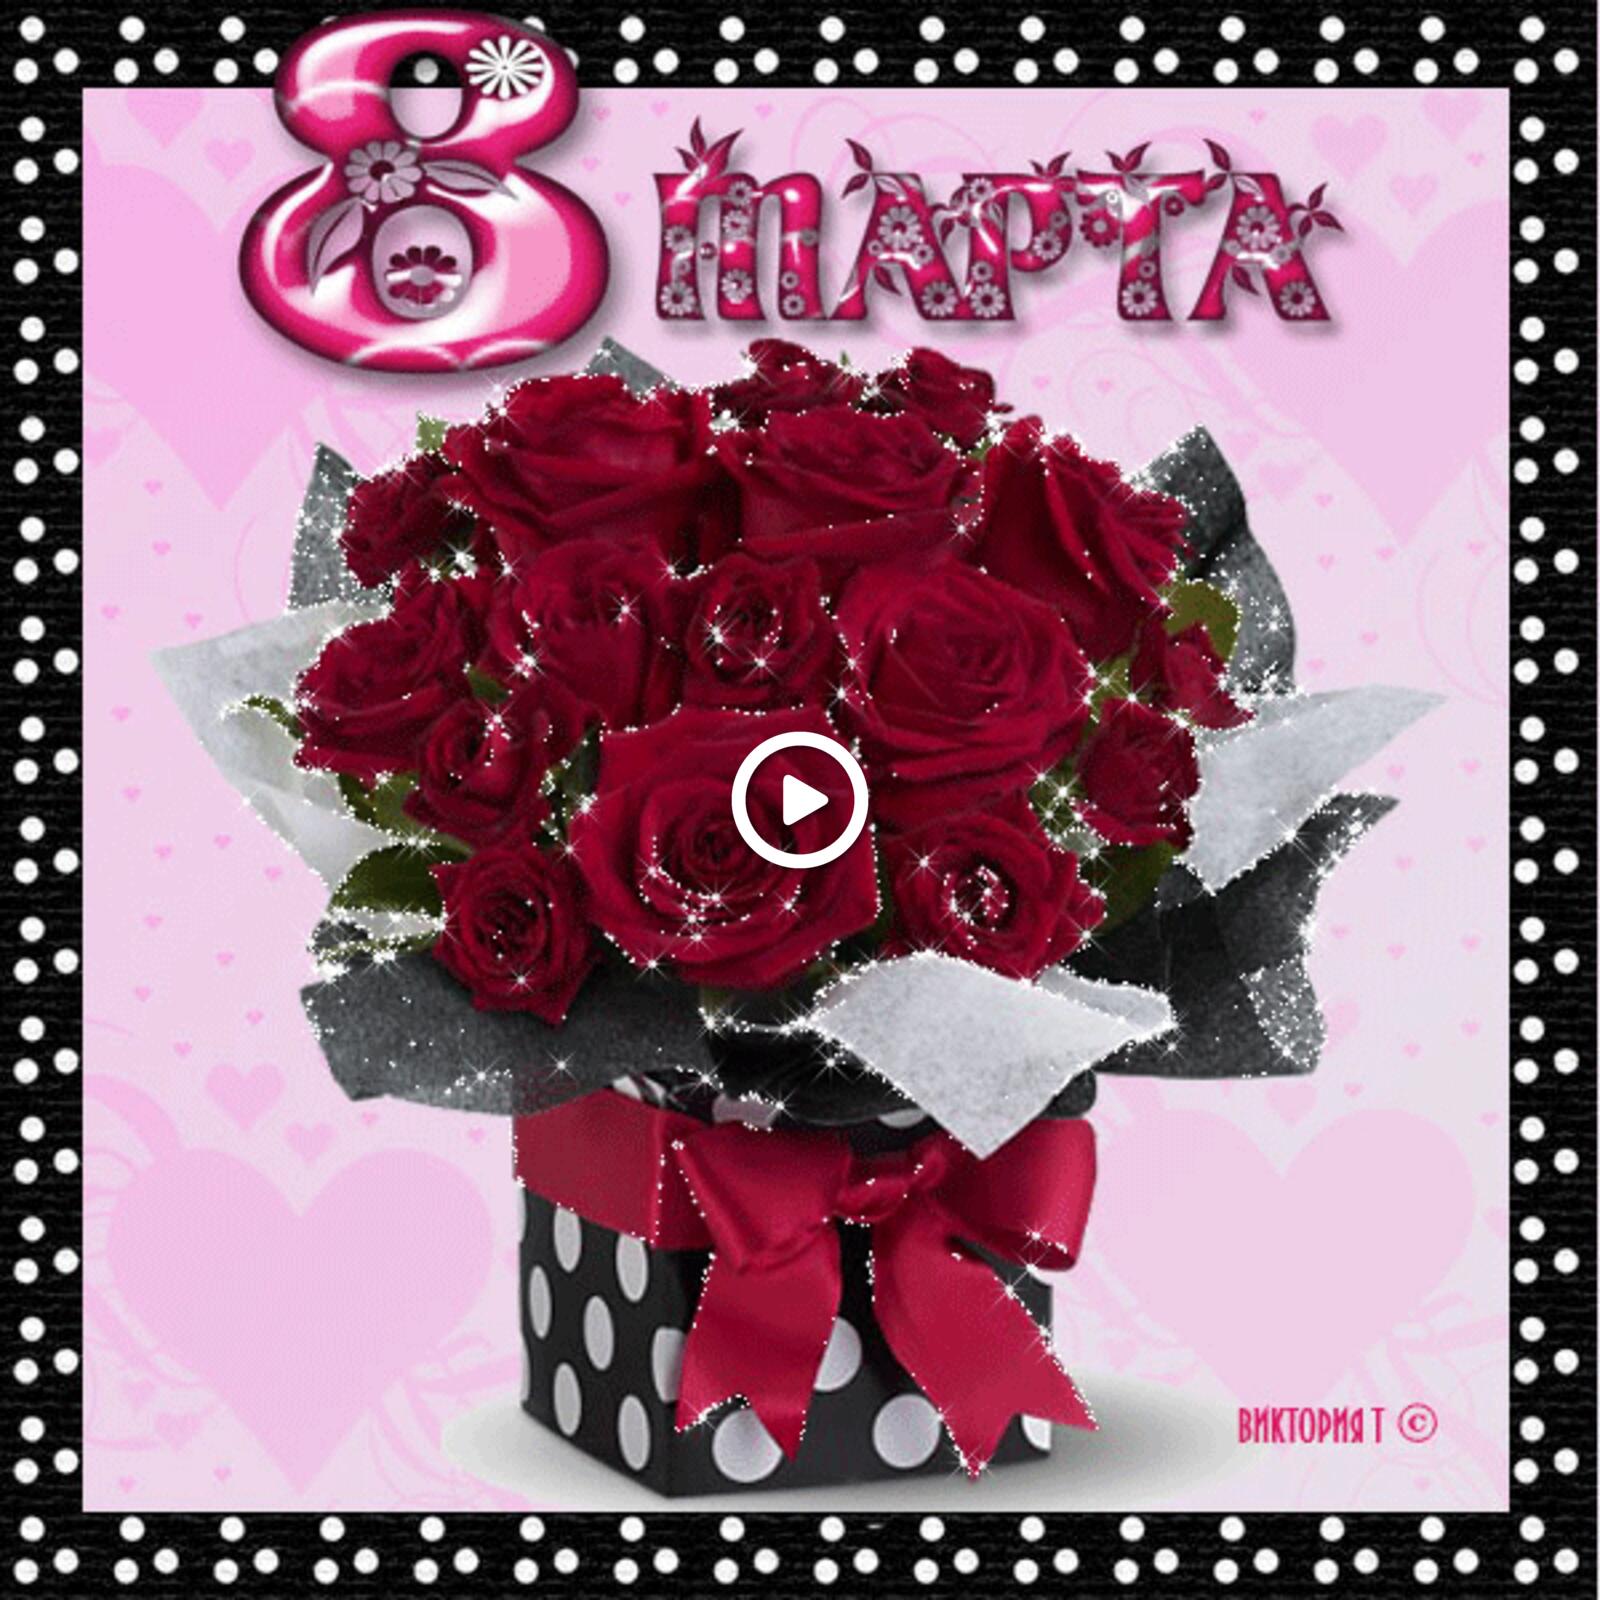 Бесплатная открытка Шикарный букет красных роз на 8 марта